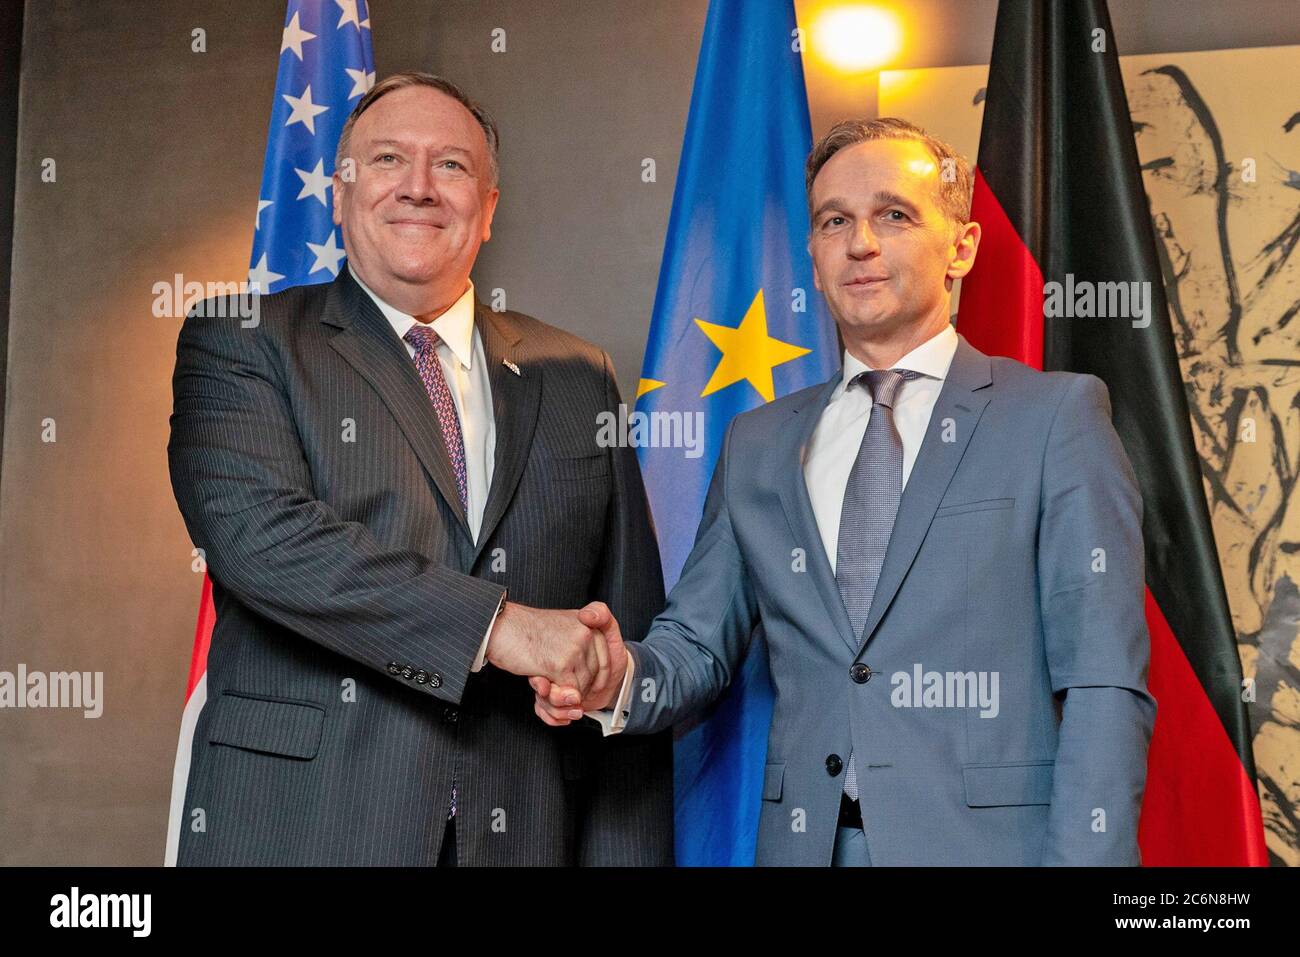 El Secretario de Estado de los Estados Unidos, Michael R. Pompeo, se reúne con el Ministro de Asuntos Exteriores alemán Heiko Maas en Munich, Alemania, el 14 de febrero de 2020 Foto de stock